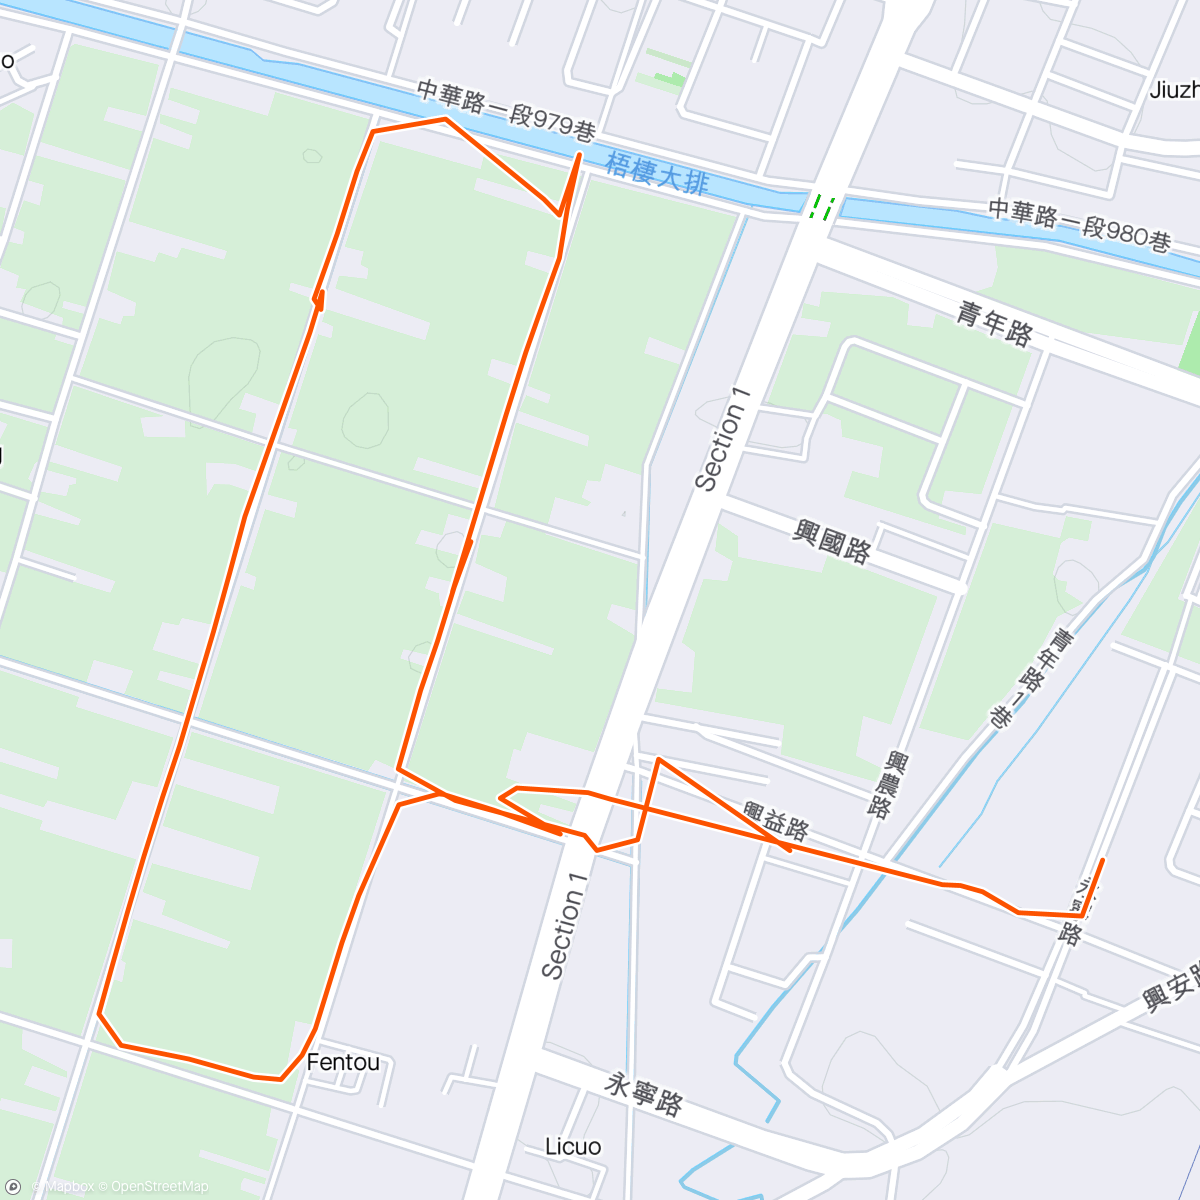 「跑步」活動的地圖